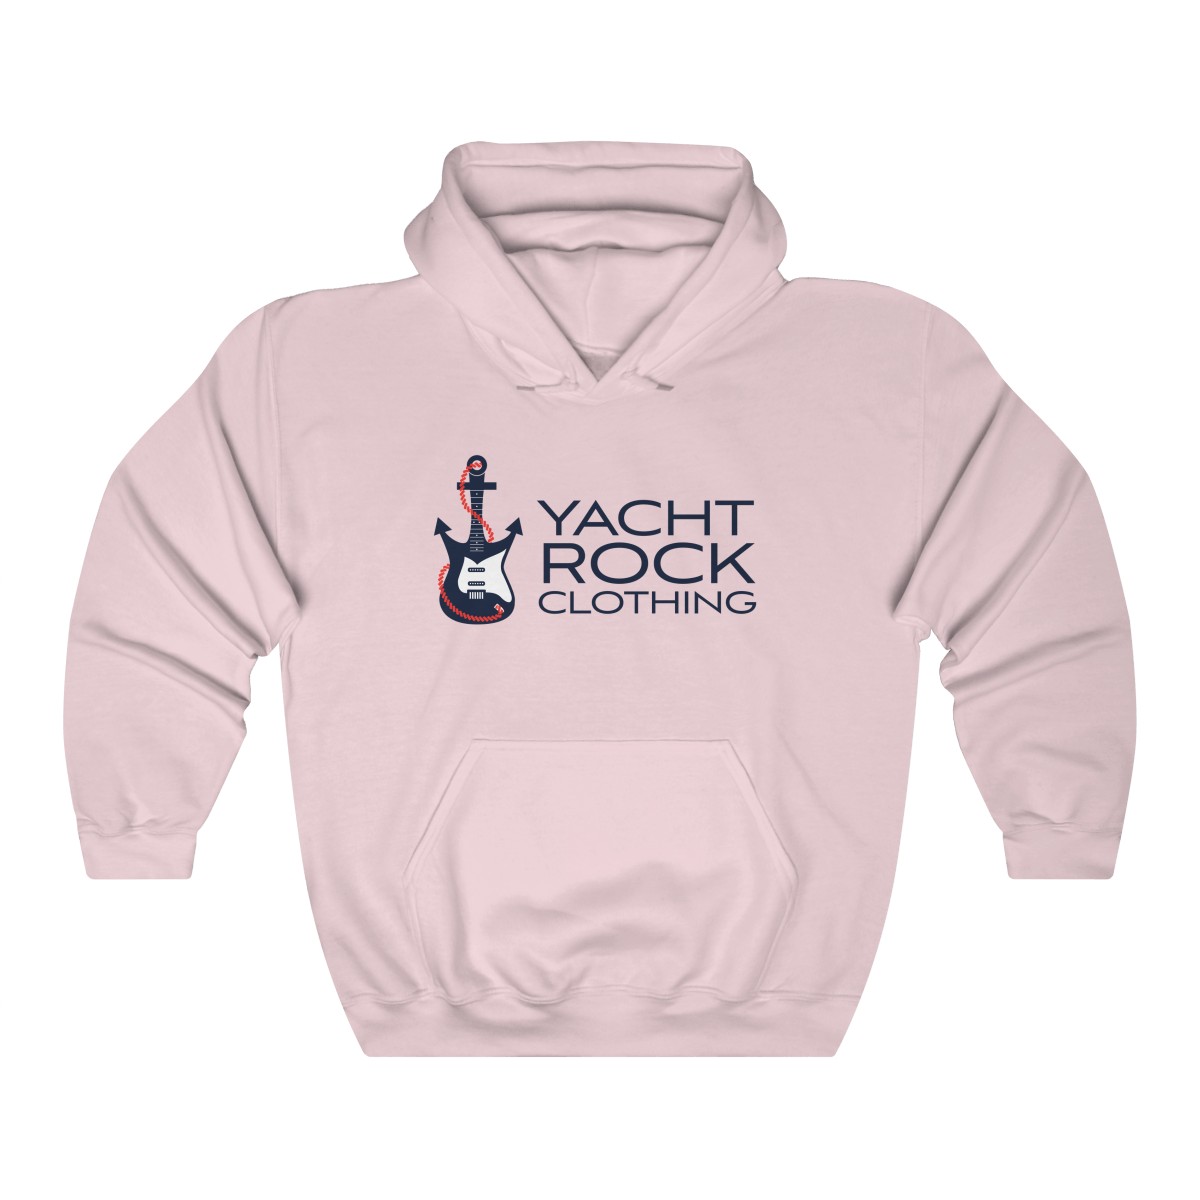 Yacht Rock Clothing Logo - Unisex Hooded Sweatshirt